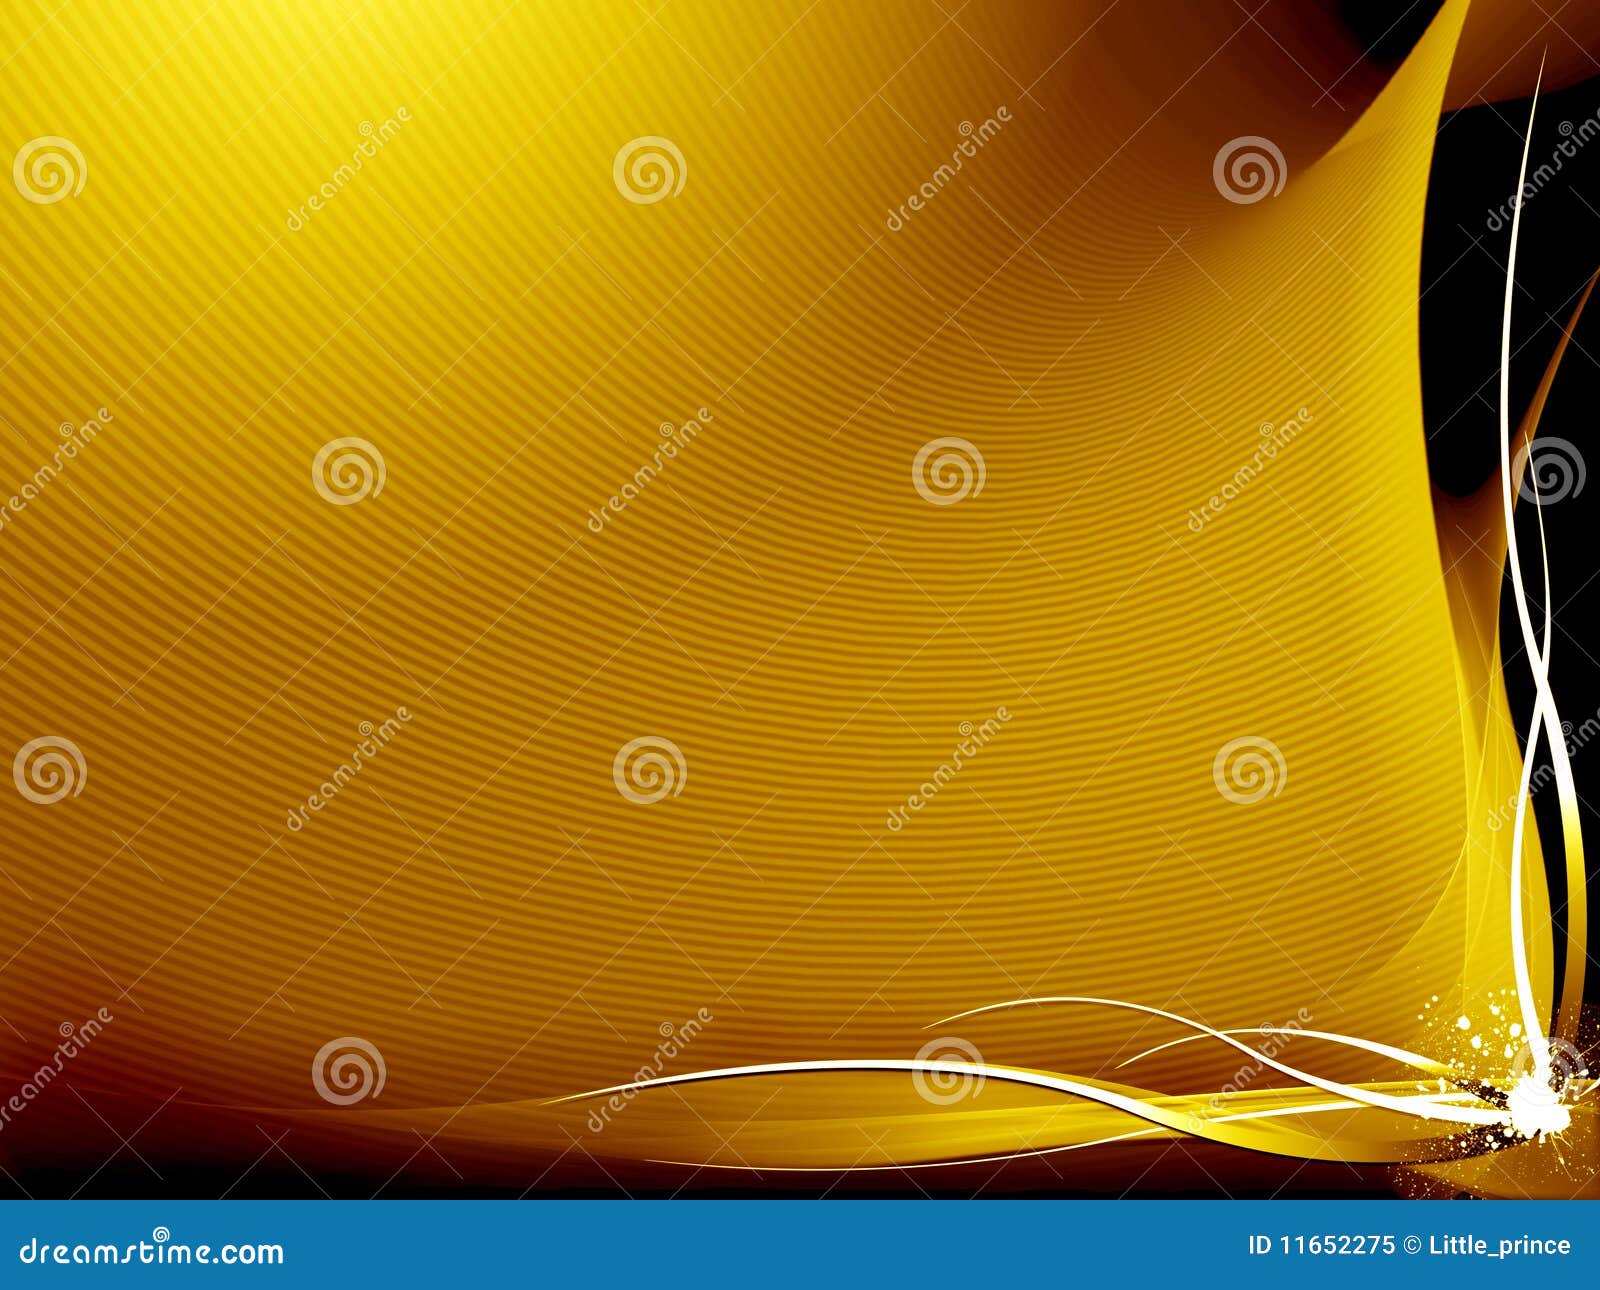 2475587 Dark Yellow Background Images Stock Photos  Vectors   Shutterstock